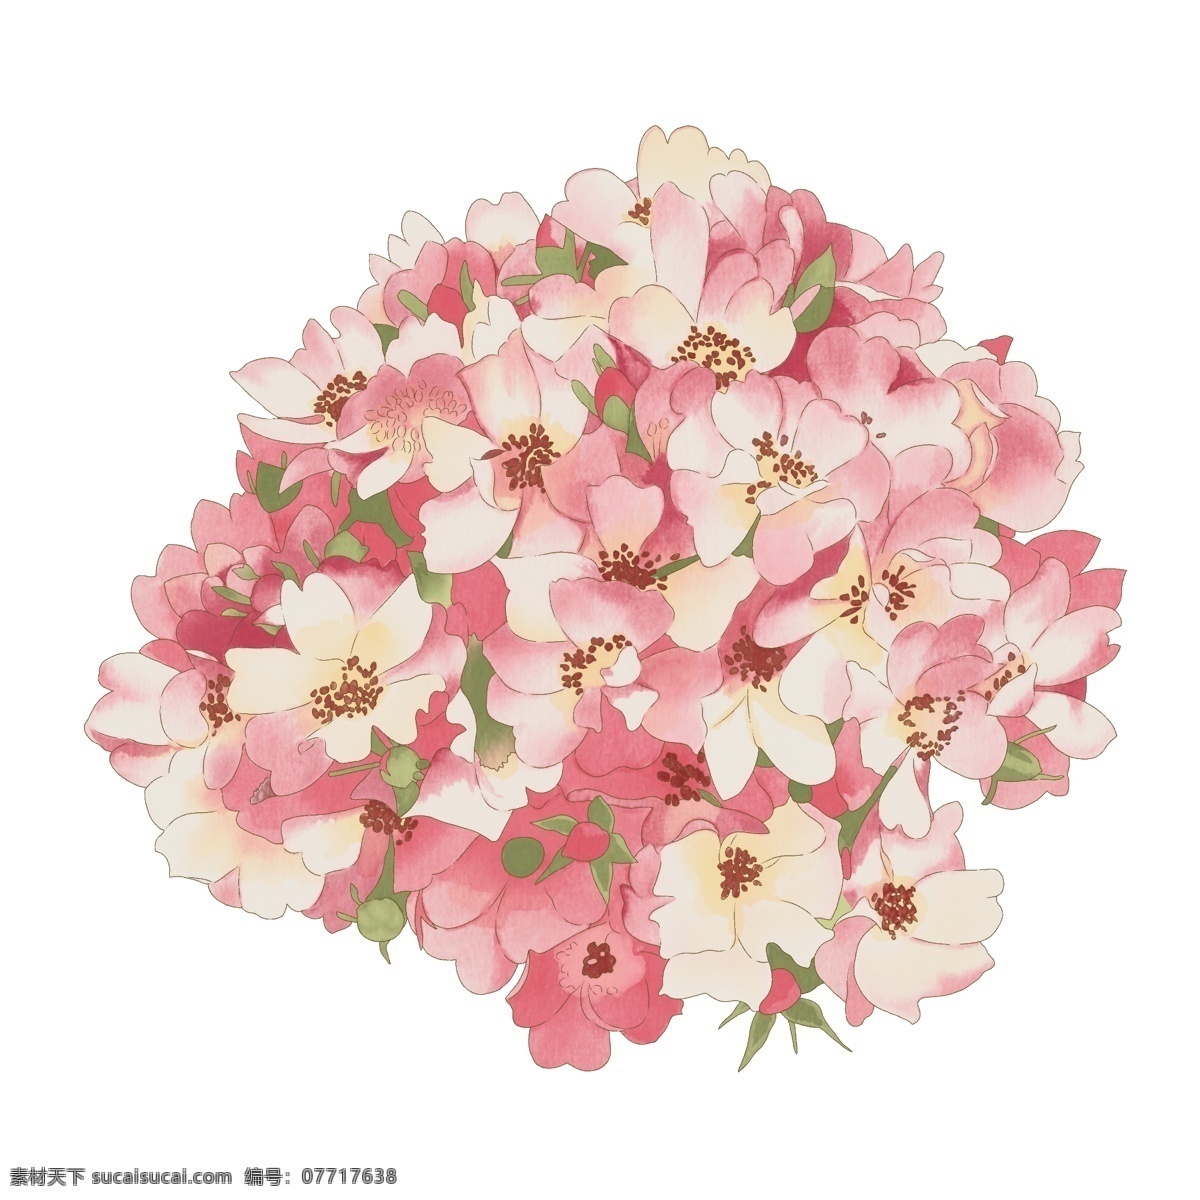 日本樱花花卉 日本樱花 鲜花 花朵 花草 植物 花卉 浪漫 情人节 芳香 盛开 花瓣 水墨花 中国风 真实 拍摄 设计元素 ps海报素材 卡通花朵素材